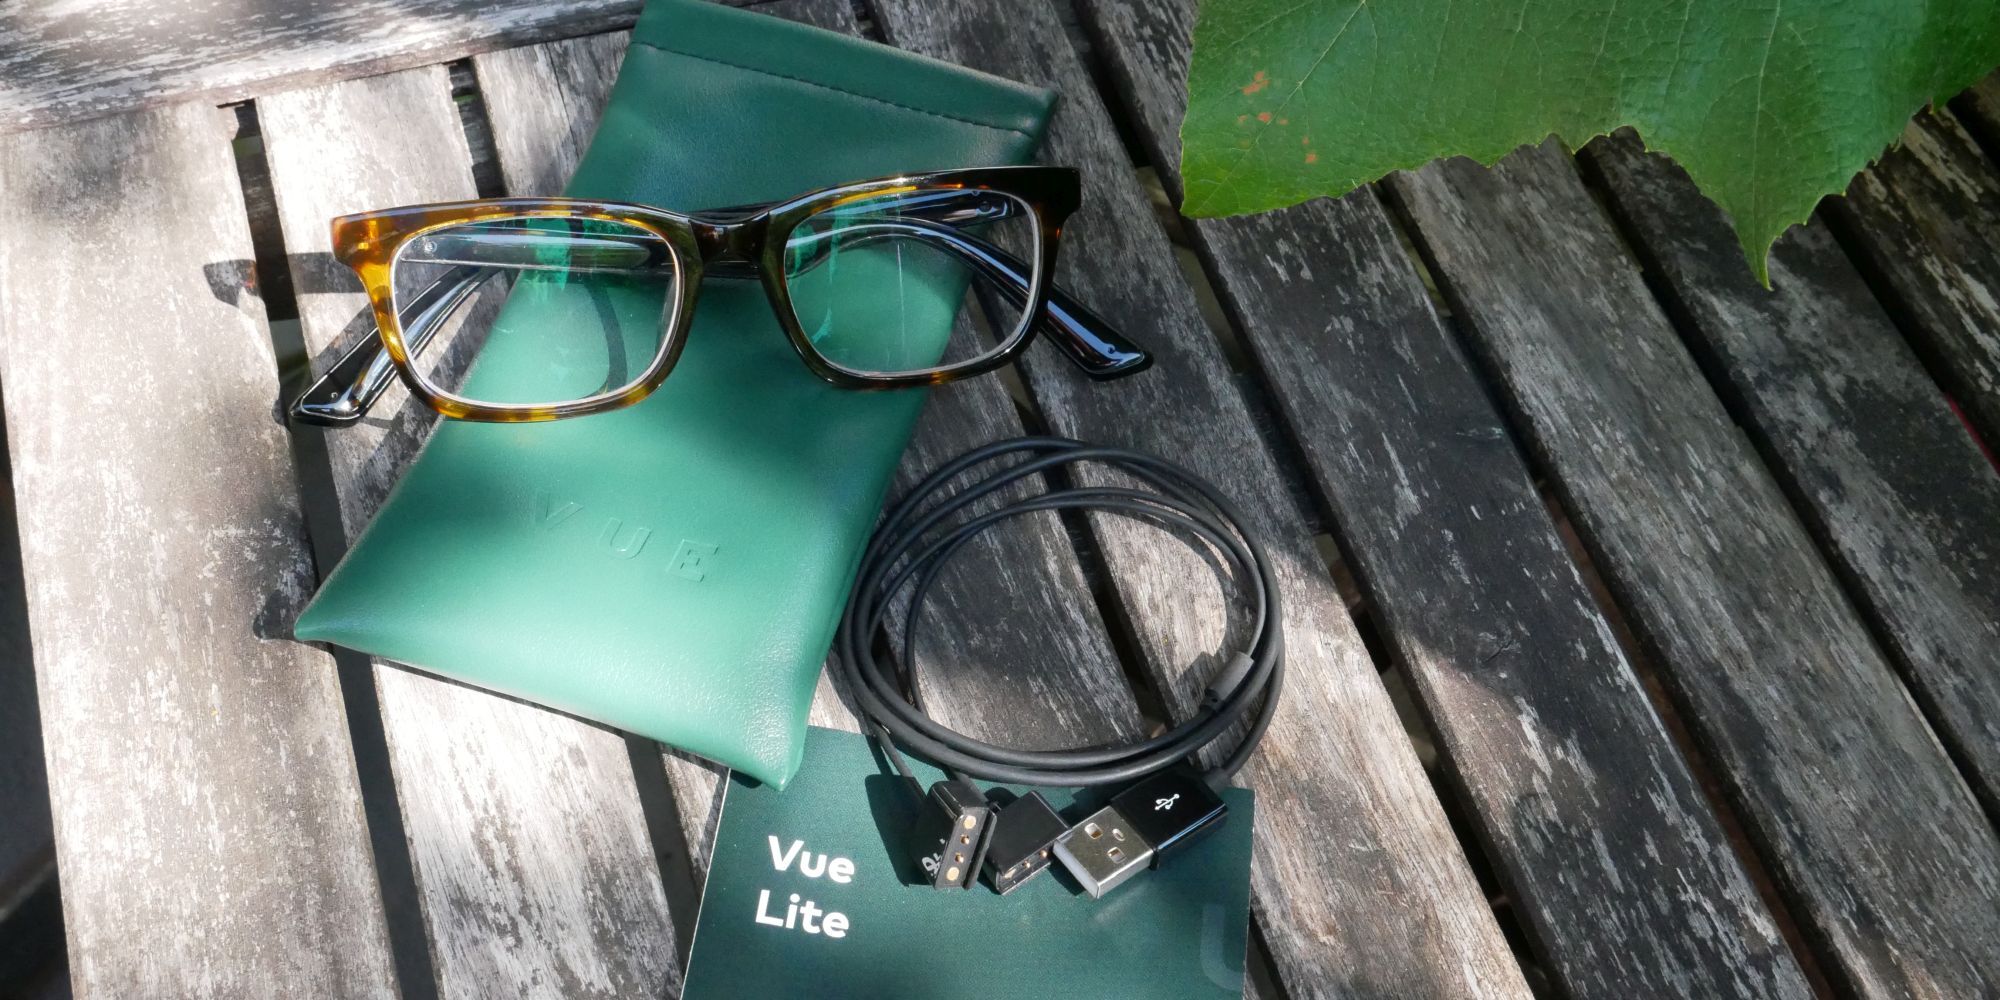 Vue Lite Glasses Package - Occhiali Vue Lite: un auricolare invisibile che sembra intelligente